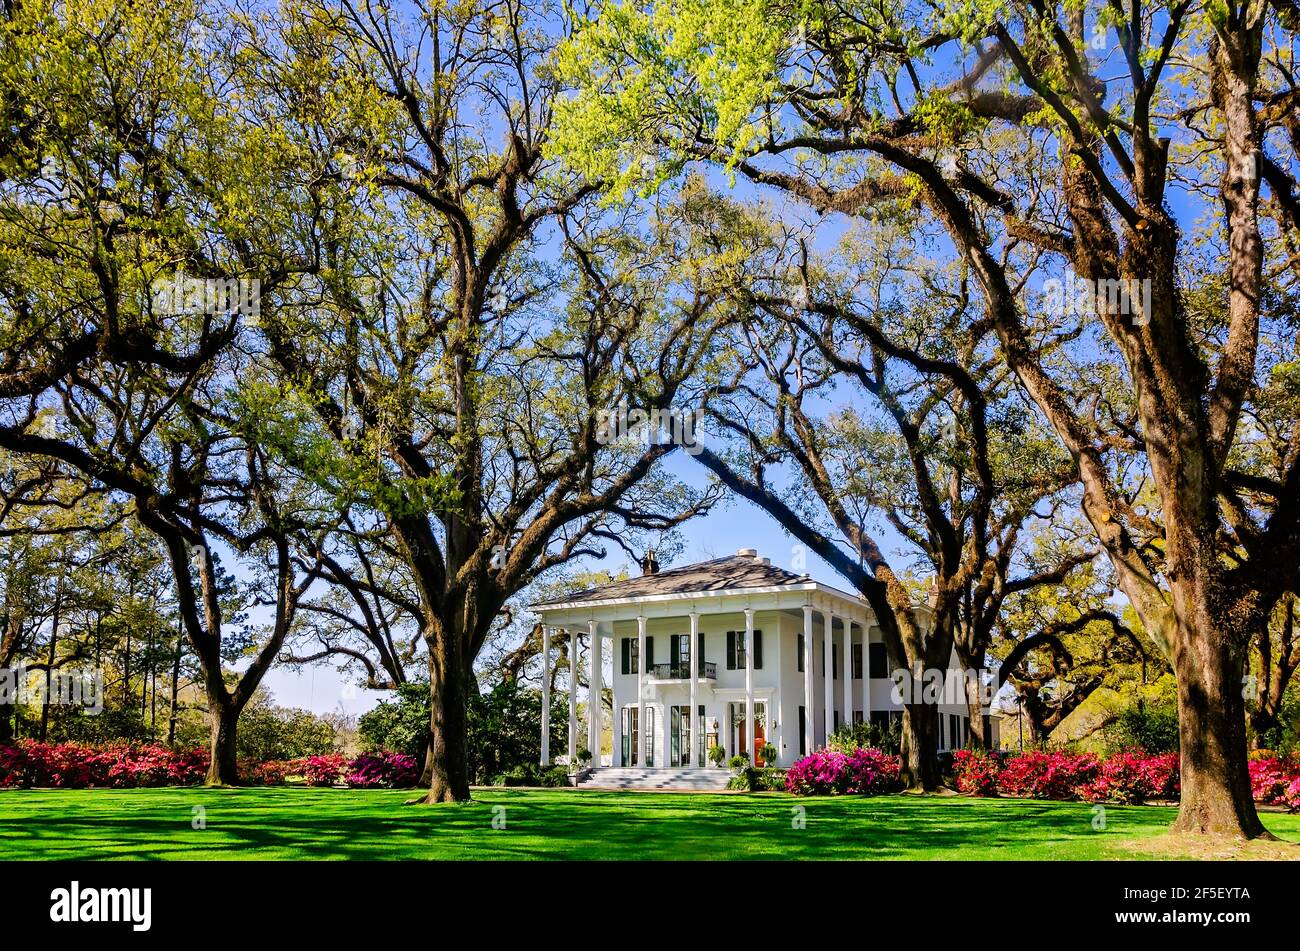 Le azalee fioriscono alla residenza di Bragg-Mitchell, 21 marzo 2021, a Mobile, Alabama. Il palazzo del 1855, risalente al periodo precedente la guerra di secessione greca, è un'attrazione molto apprezzata. Foto Stock